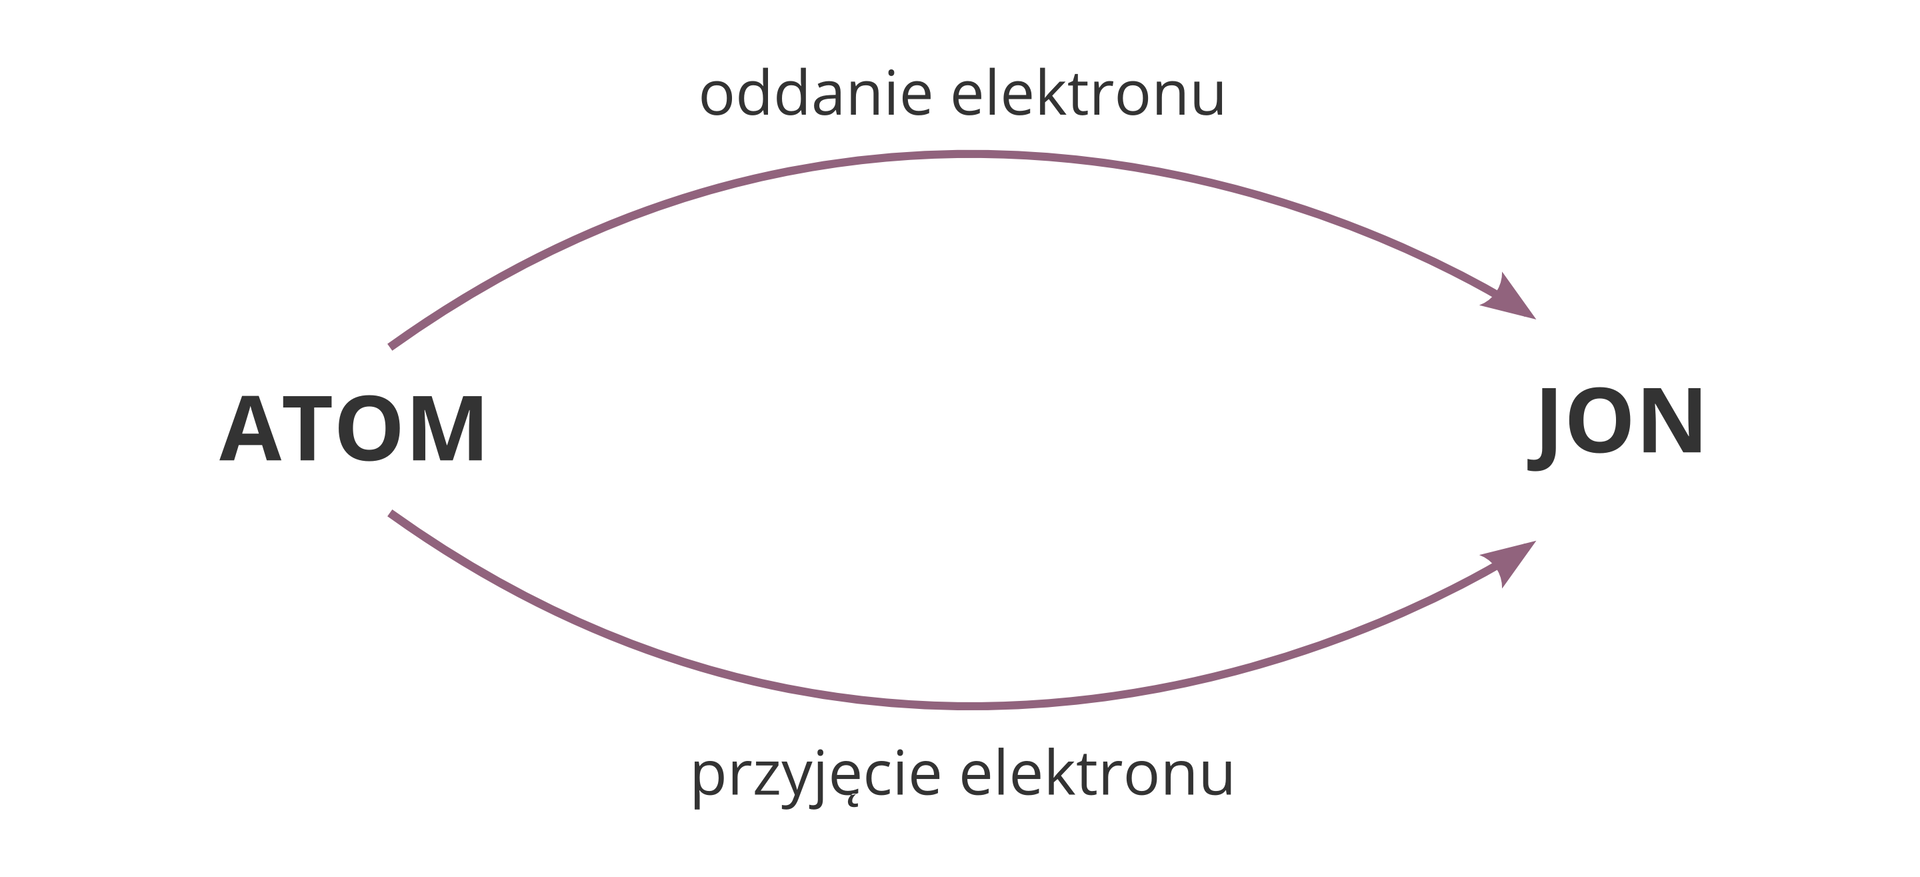 Schemat opisujący powstawanie jonu z atomu. Z lewej strony znajduje się słowo Atom, zaś z prawej Jon. Od Atomu do Jonu prowadzą dwie odrębne strzałki. Jedna opisana została jako Oddanie elektronu, a druga Przyjęcie elektronu.